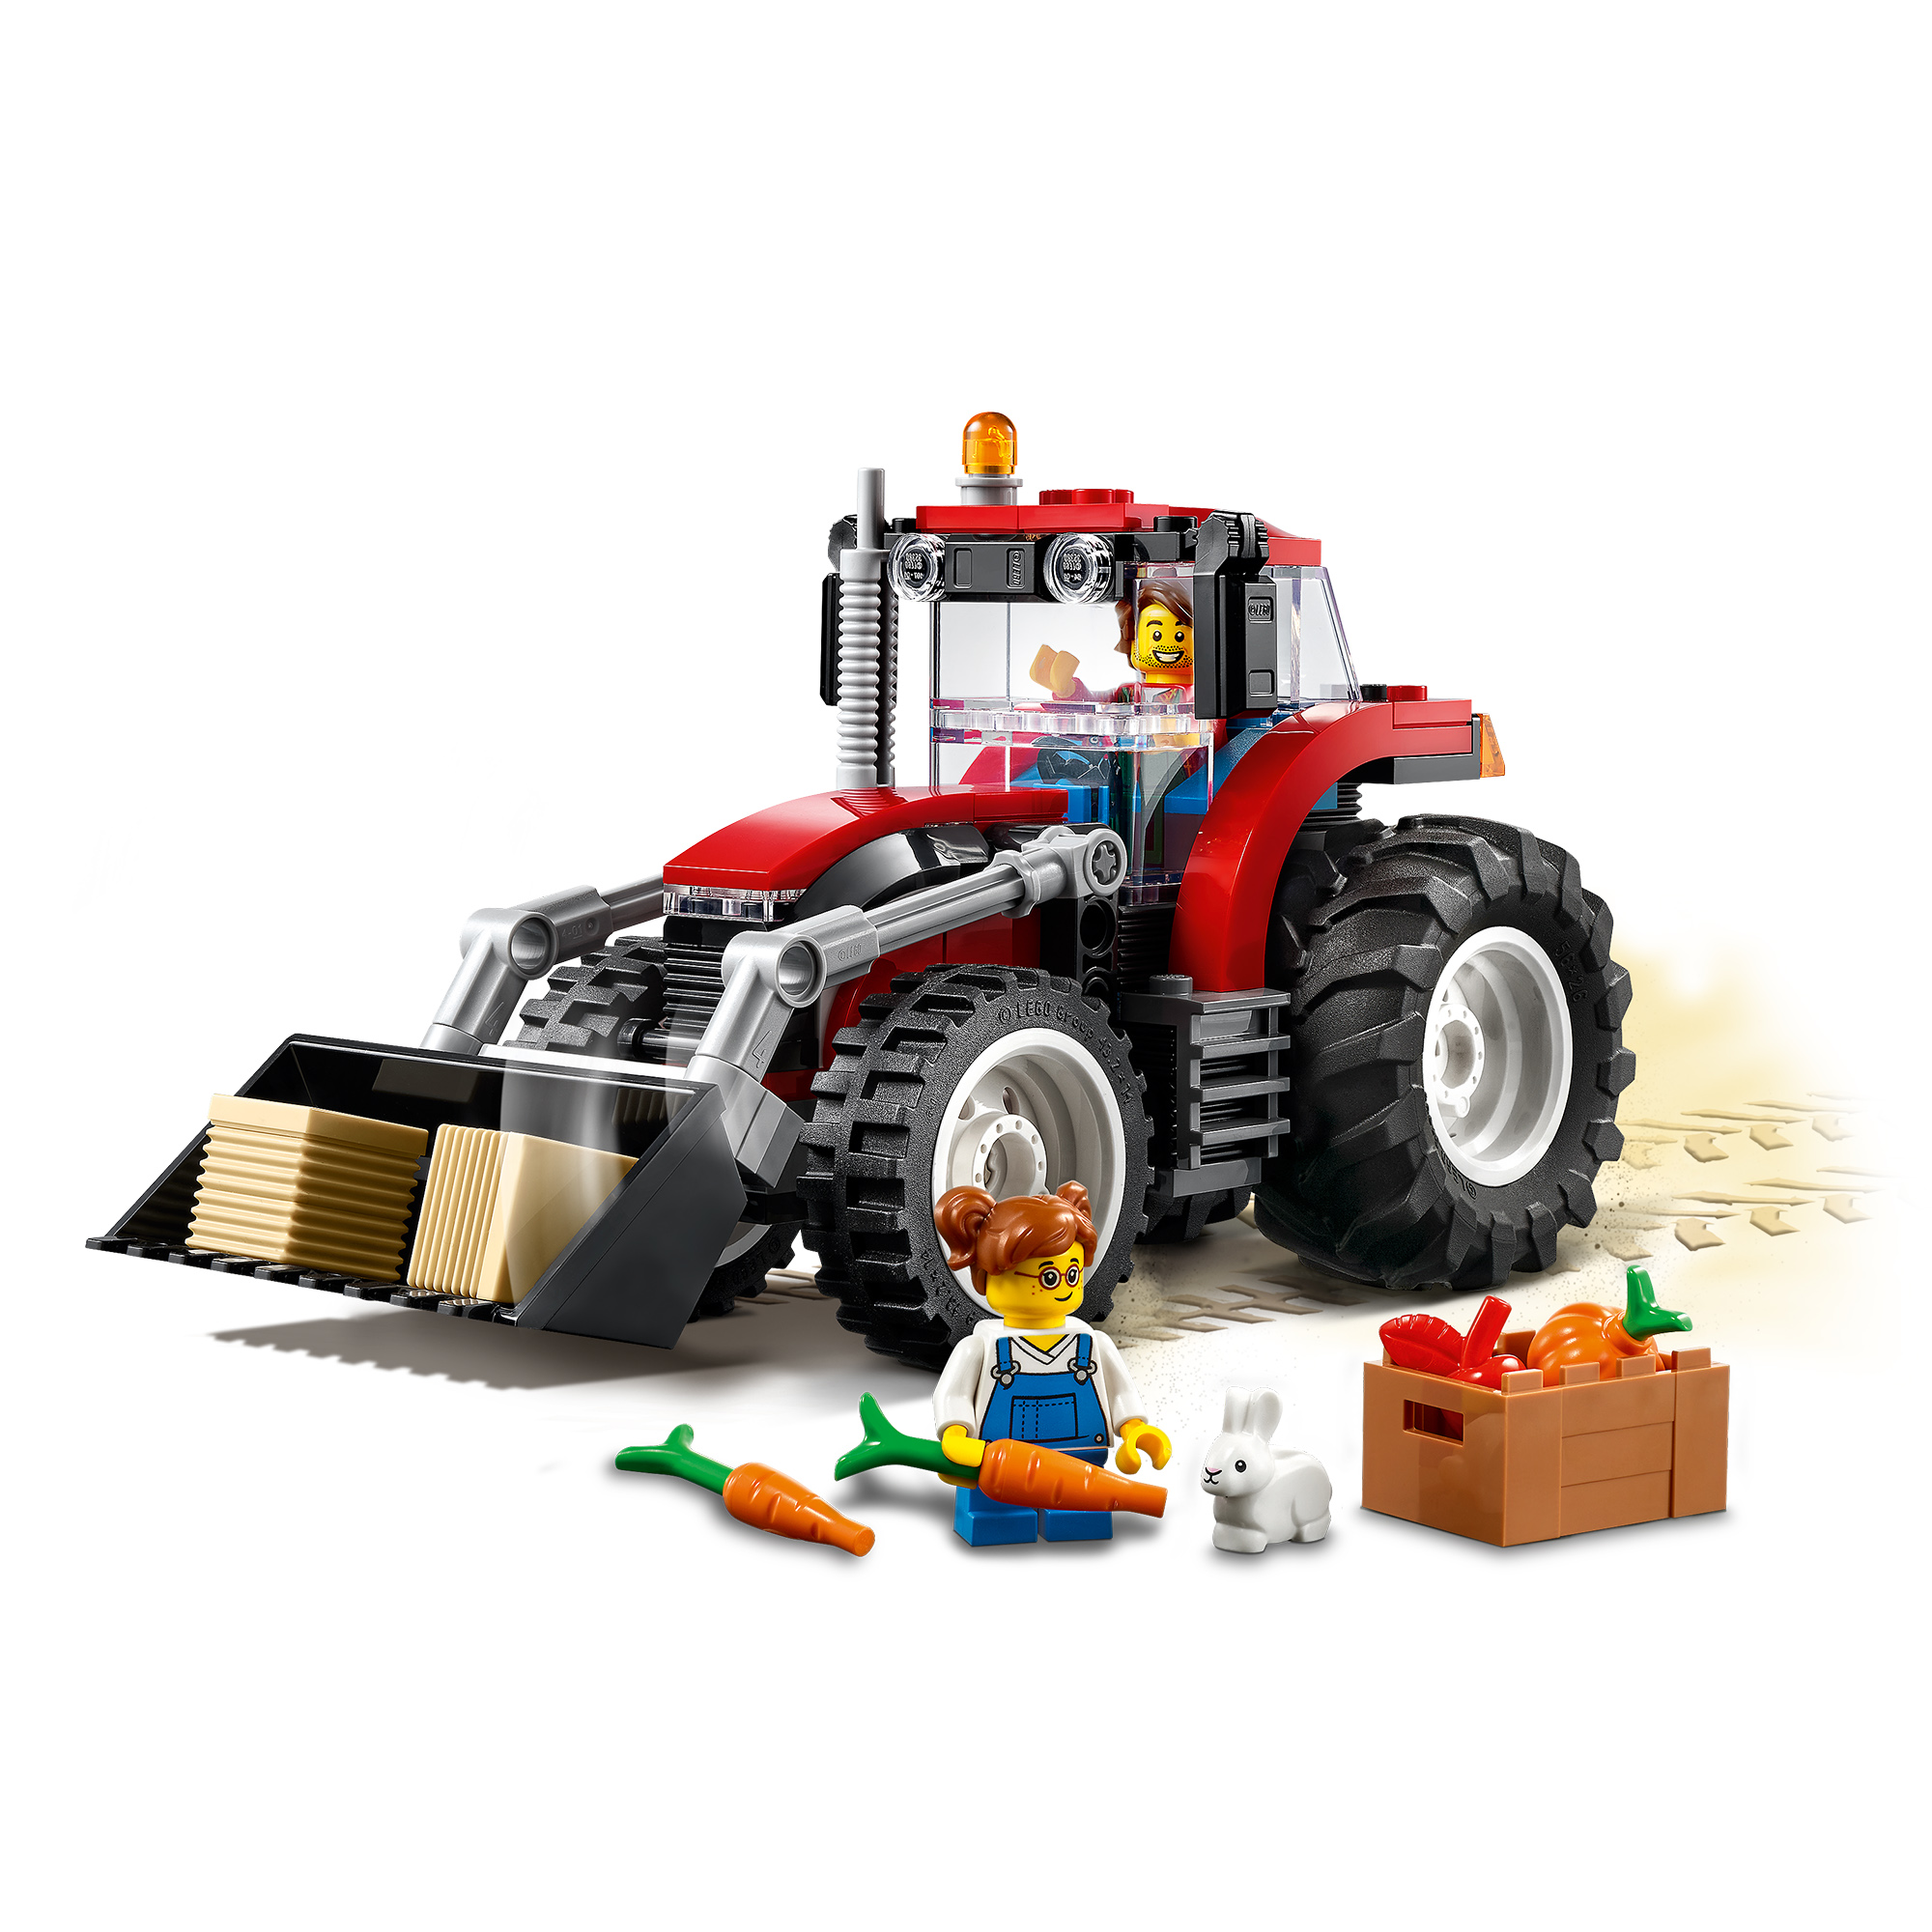 Lego city 60287 trattore, set con veicolo giocattolo, animale e minifigure, giochi per bambini e bambine, idee regalo - LEGO CITY, Lego